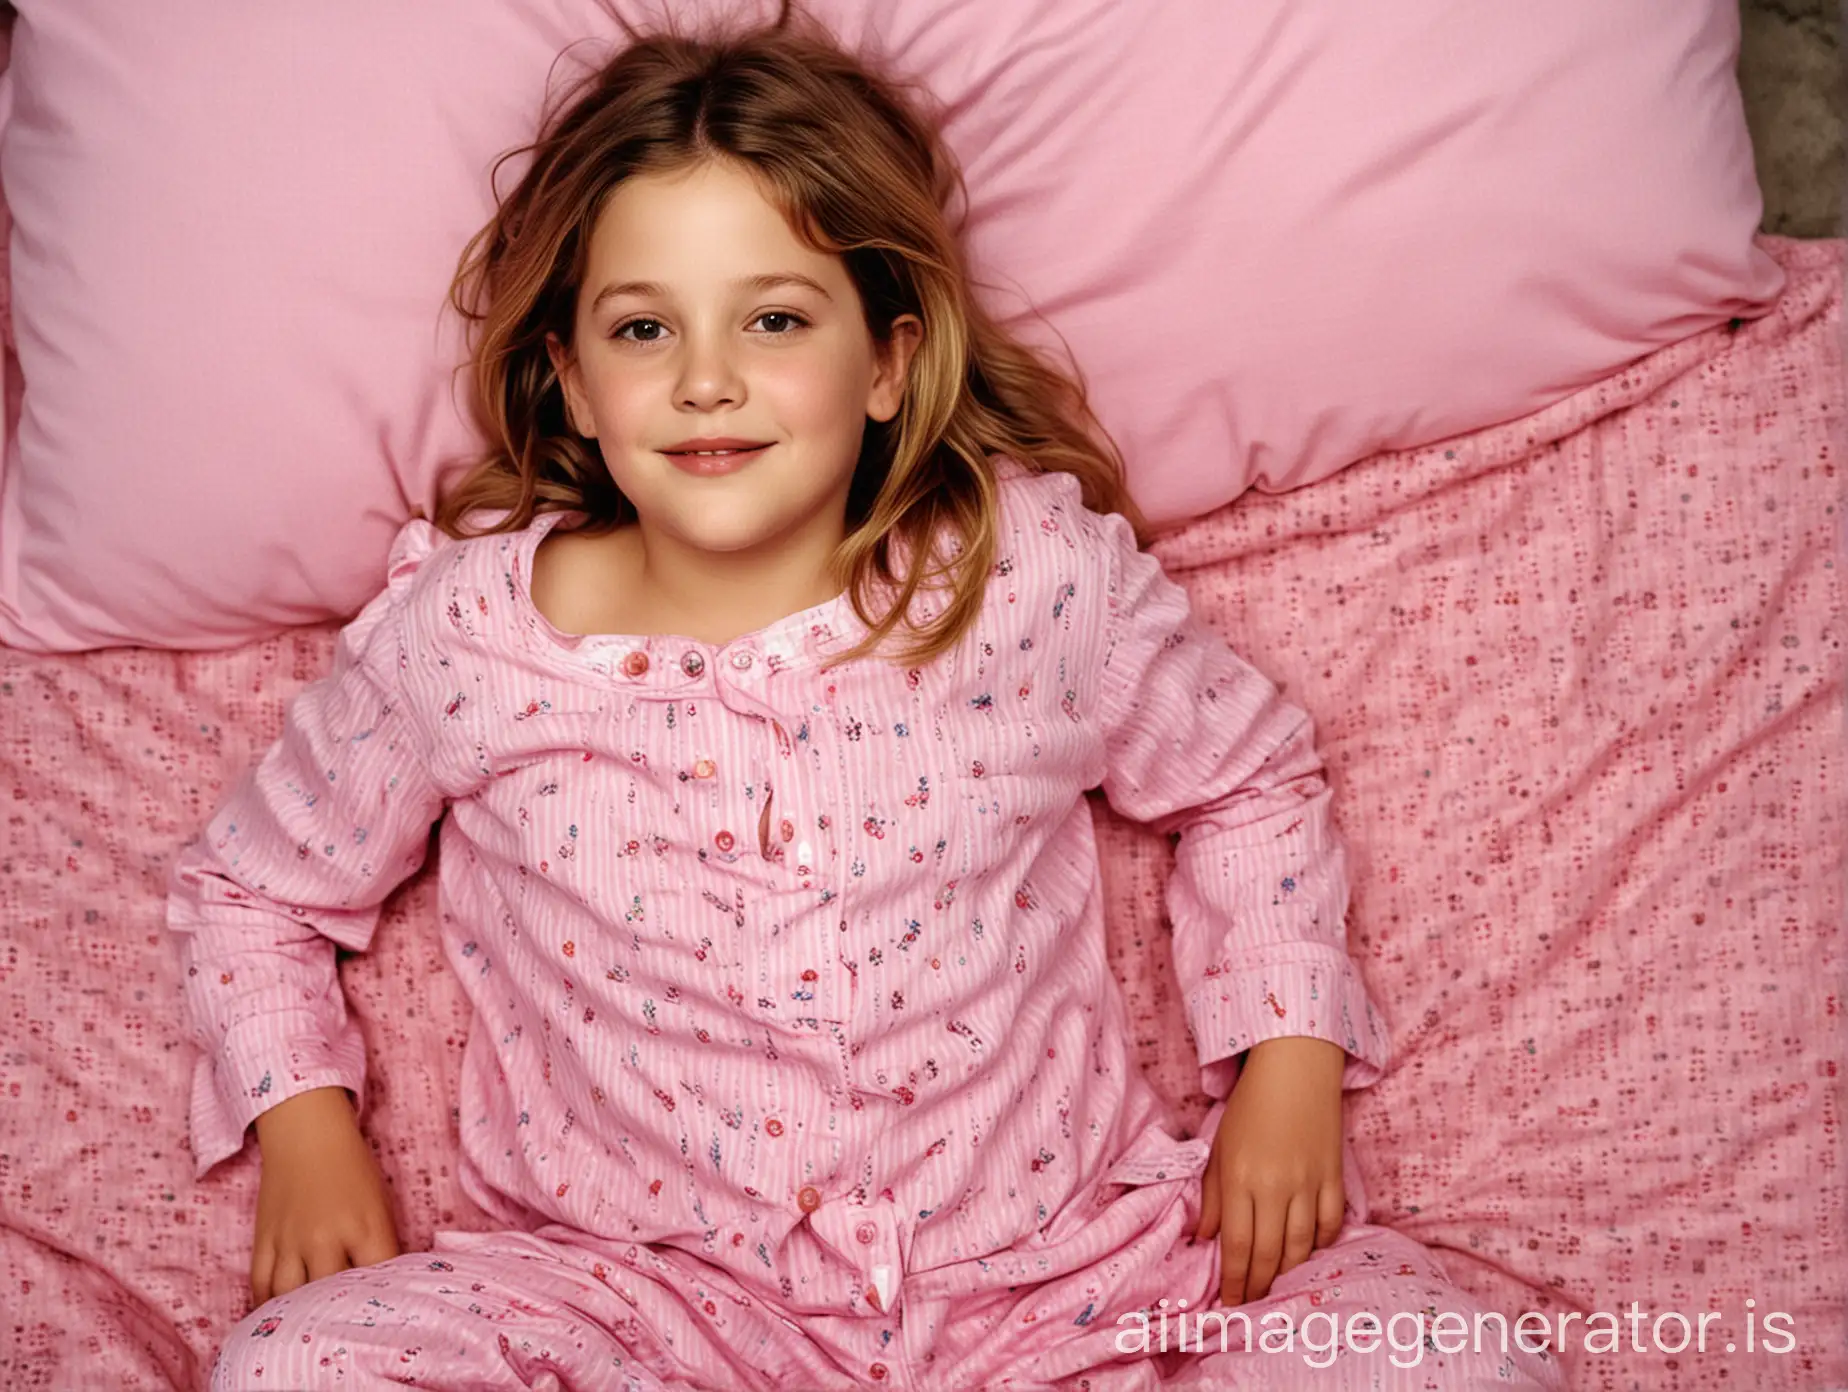 8YearOld-Drew-Barrymore-in-Pink-Pajamas-Posing-Playfully